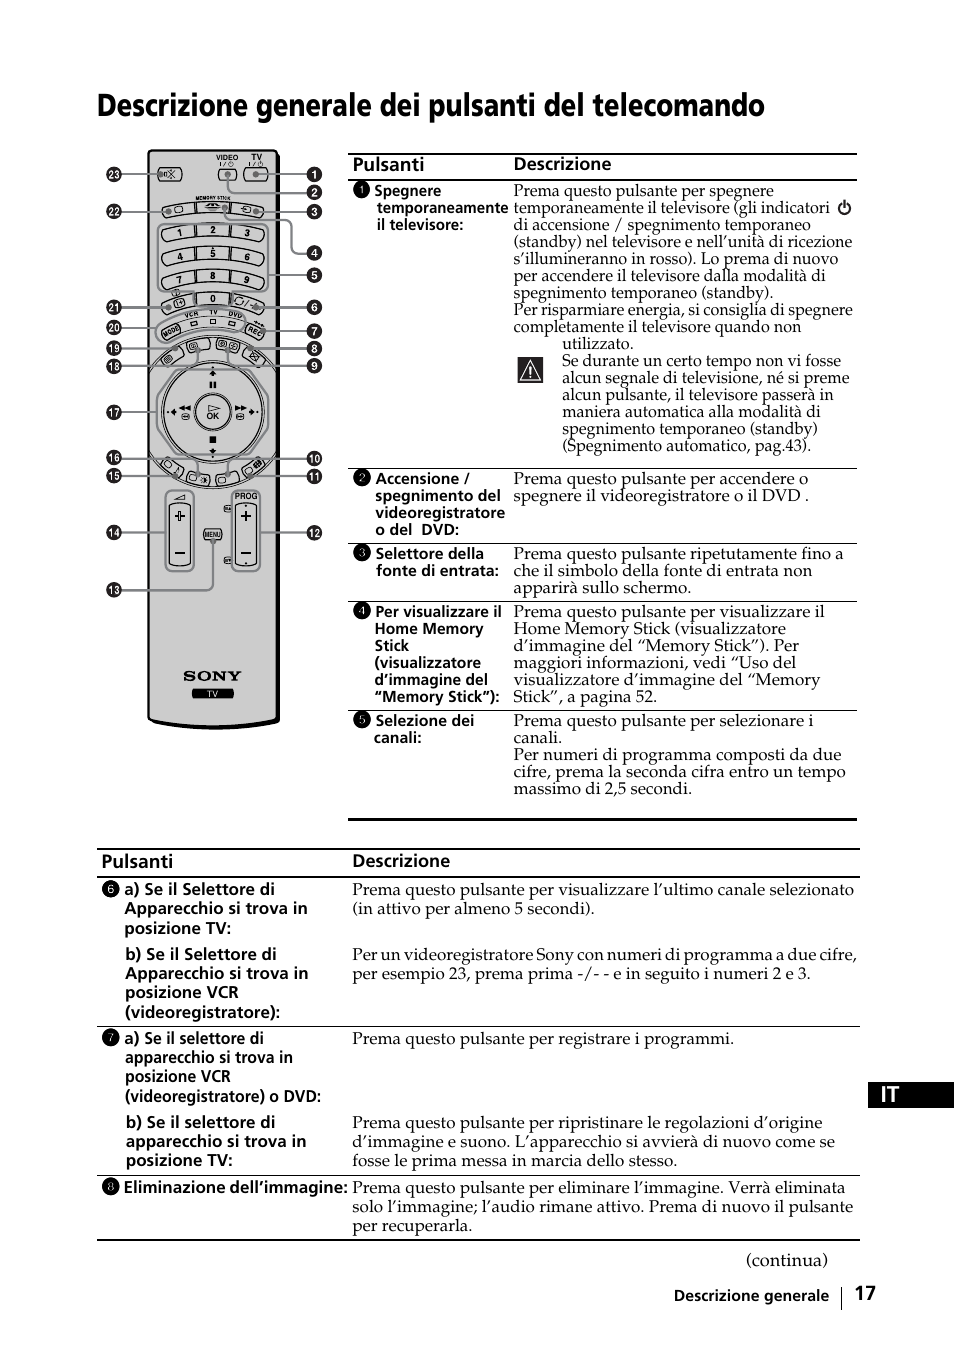 Descrizione generale dei pulsanti del telecomando | Sony KE-42MR1 Manuale d'uso | Pagina 18 / 302